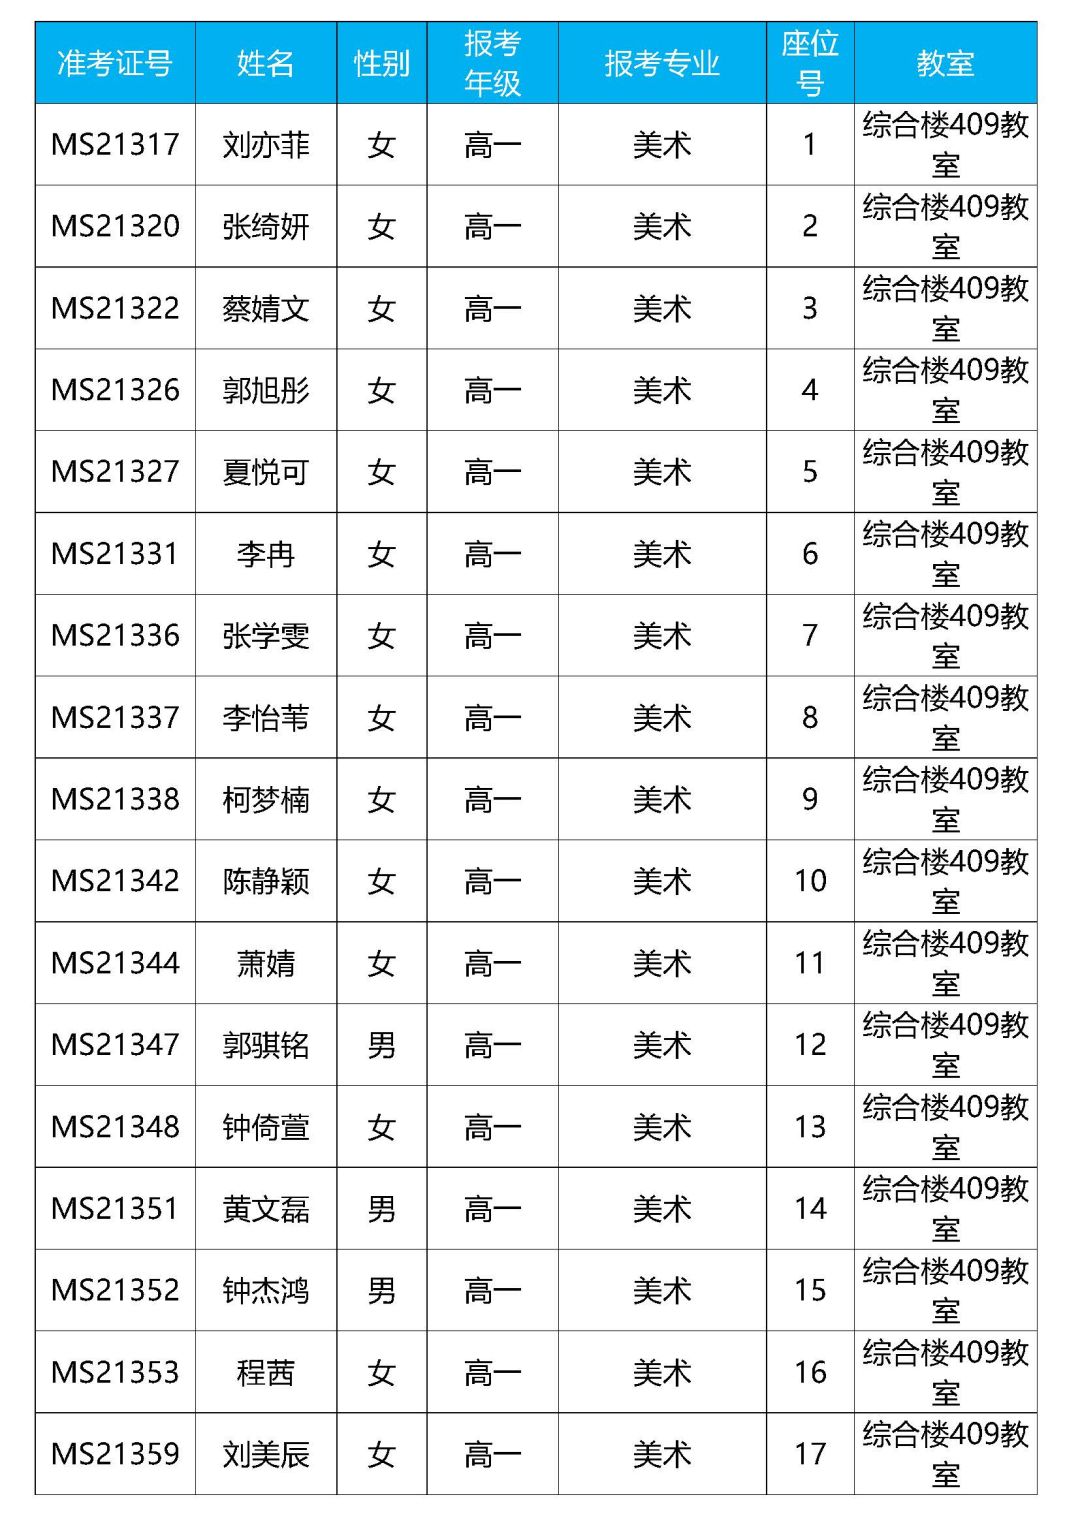 2021年深圳艺术学校招生考试文化课适应性教学教室安排